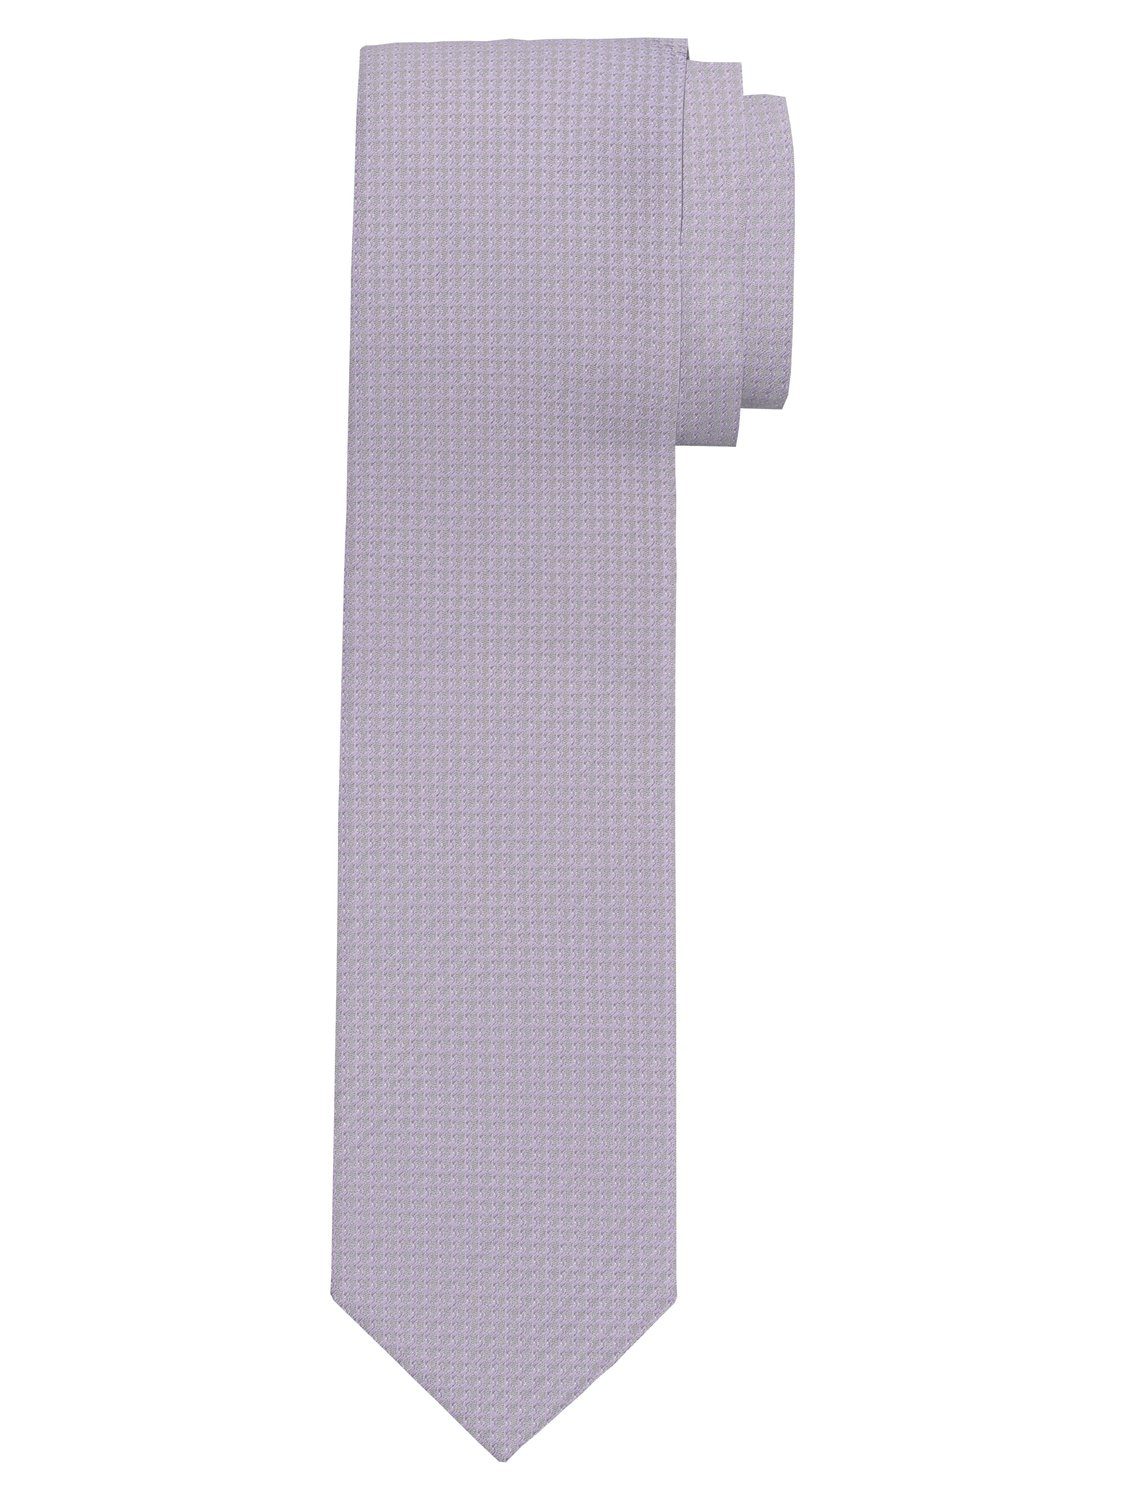 OLYMP Krawatte flieder Krawatten 1782/00